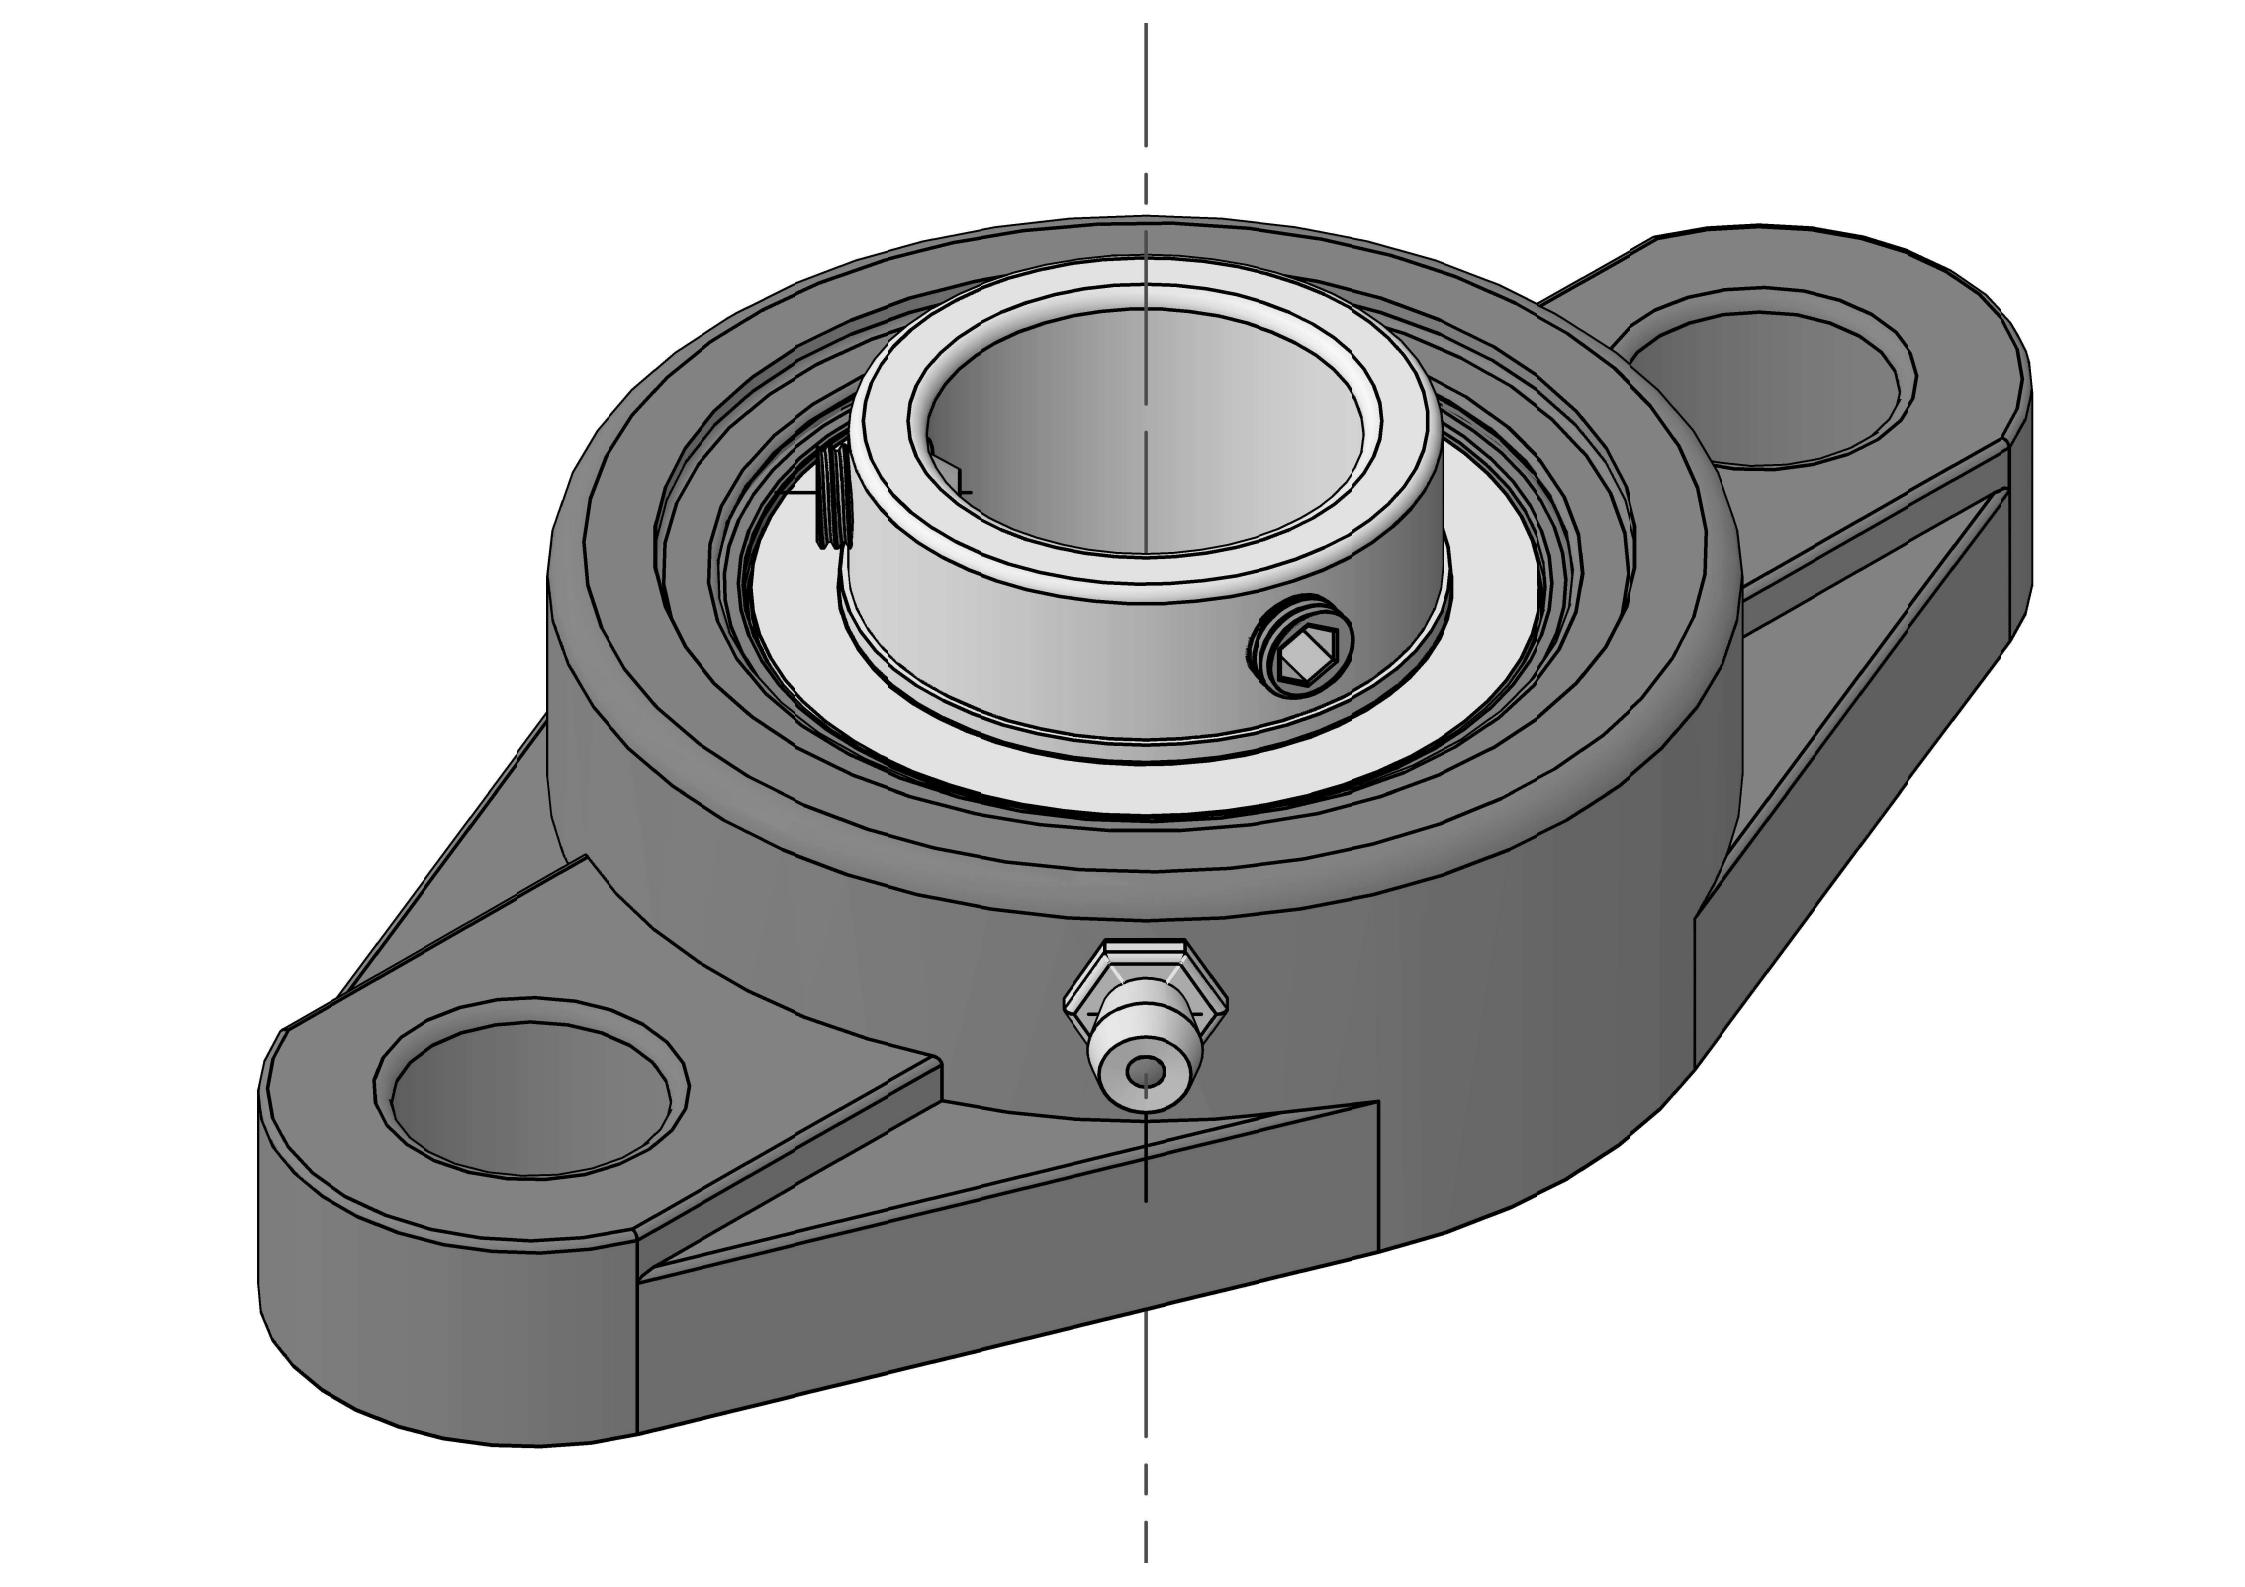 UCFL310-31 Ležajne jedinice s ovalnom prirubnicom s dva vijka i provrtom od 1-15/16 inča